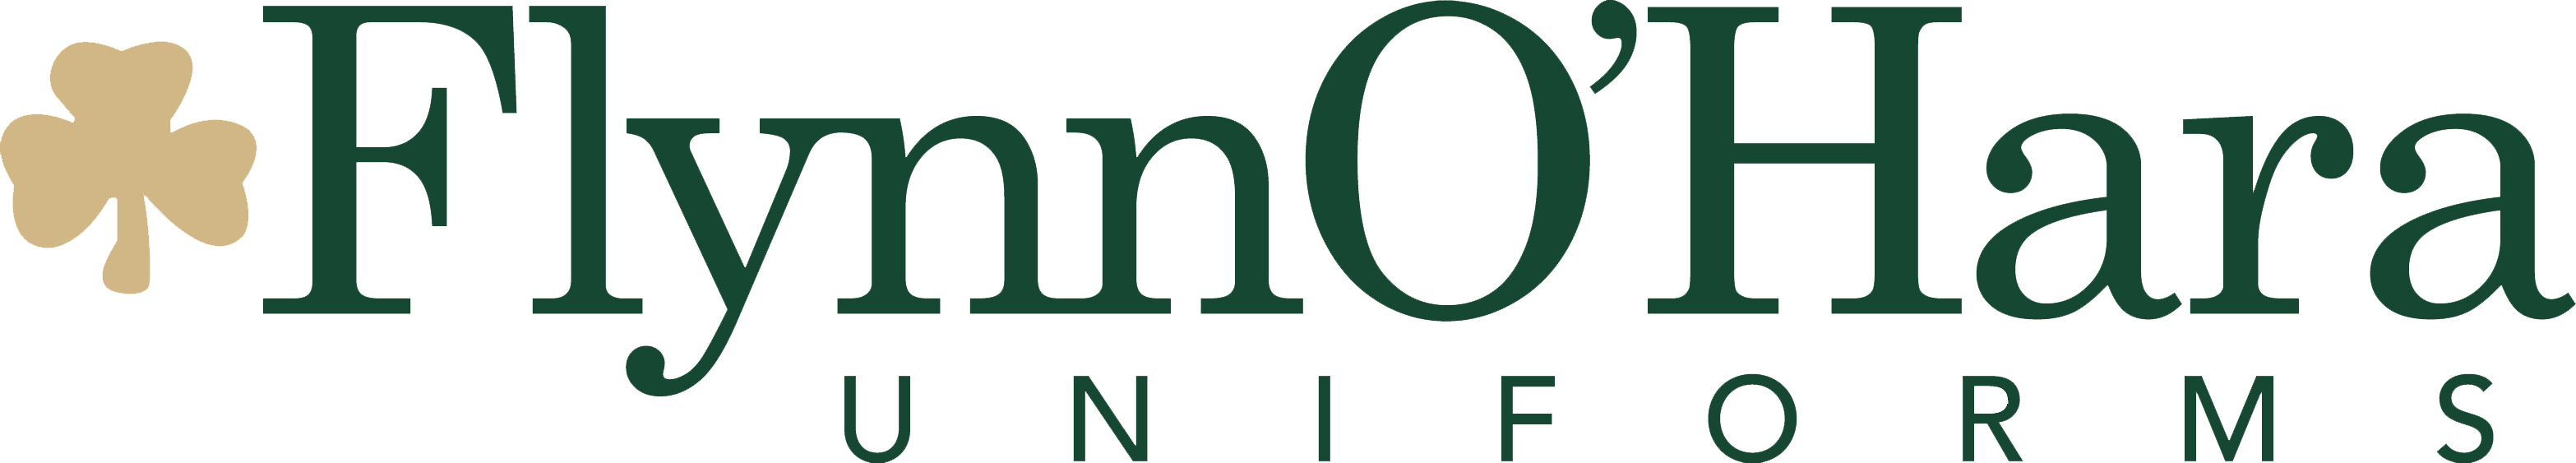 Flynn OHara Uniforms logo